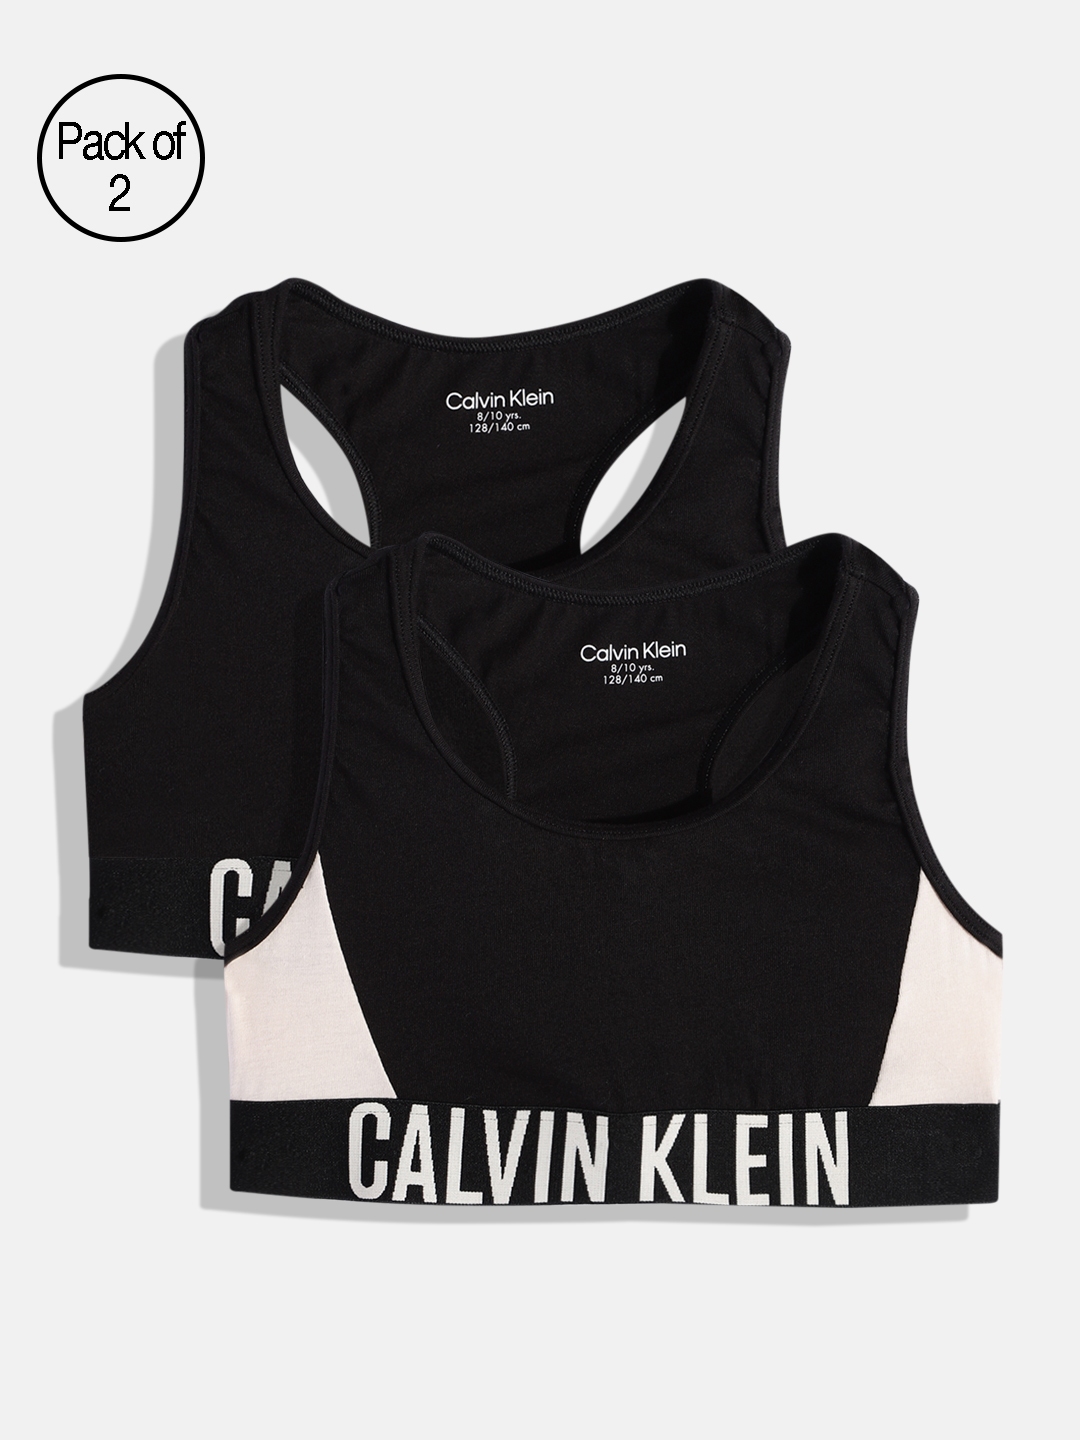 Calvin Klein Underwear Black & Black Printed Non-Wired Lightly Padded  T-shirt Bra